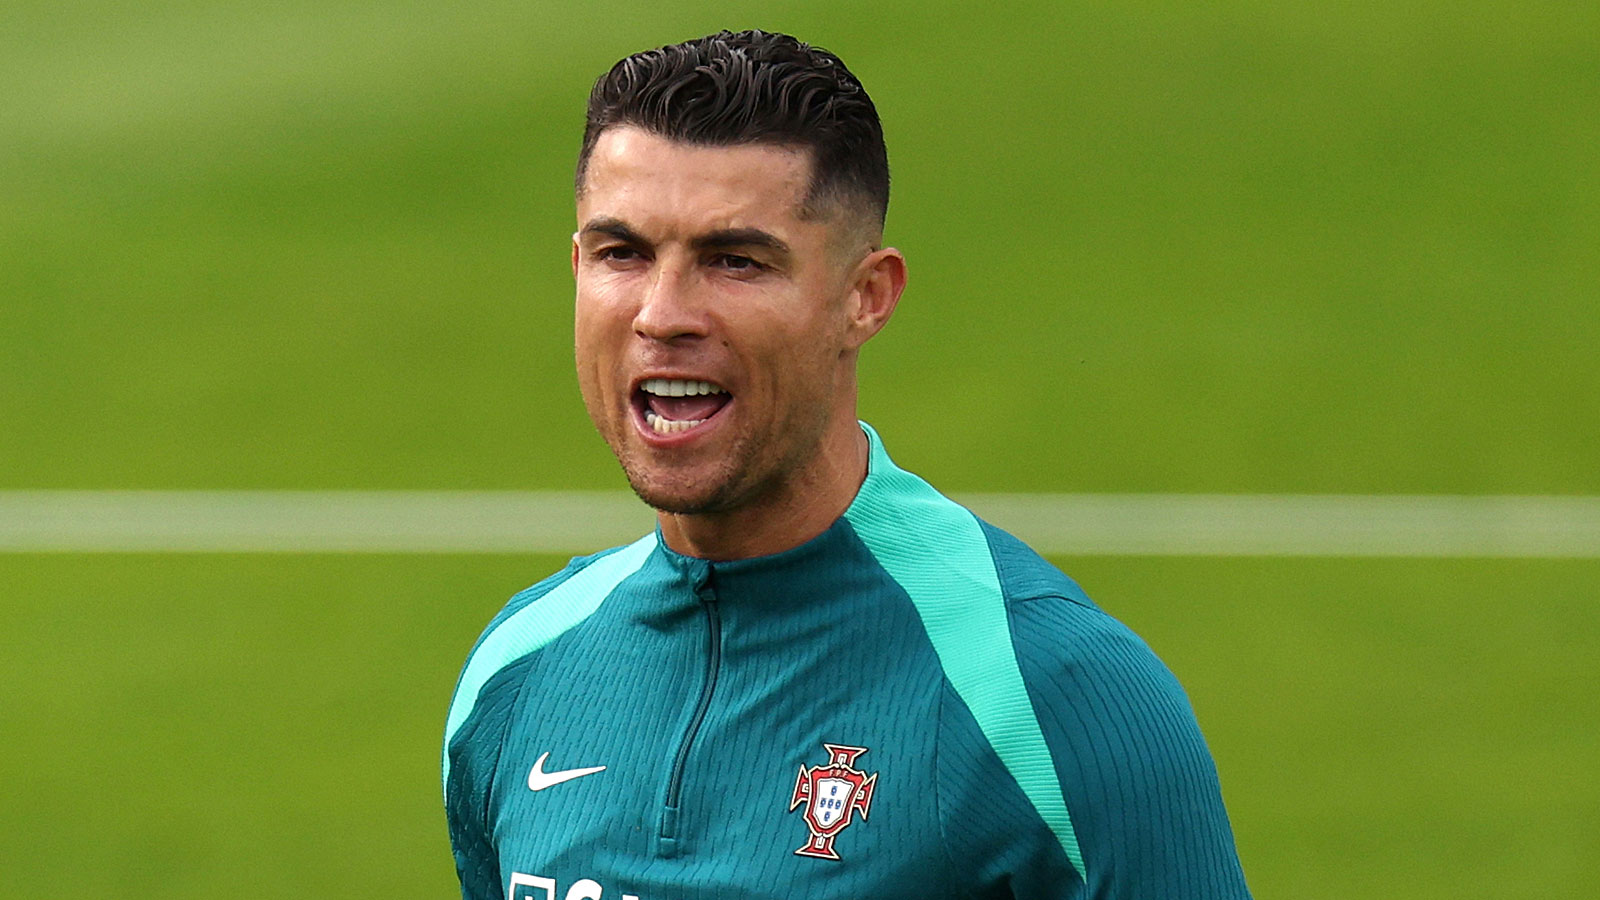 La nouvelle révélation choc de Ronaldo enflamme la toile : « Je ferai mieux d’arrêter »